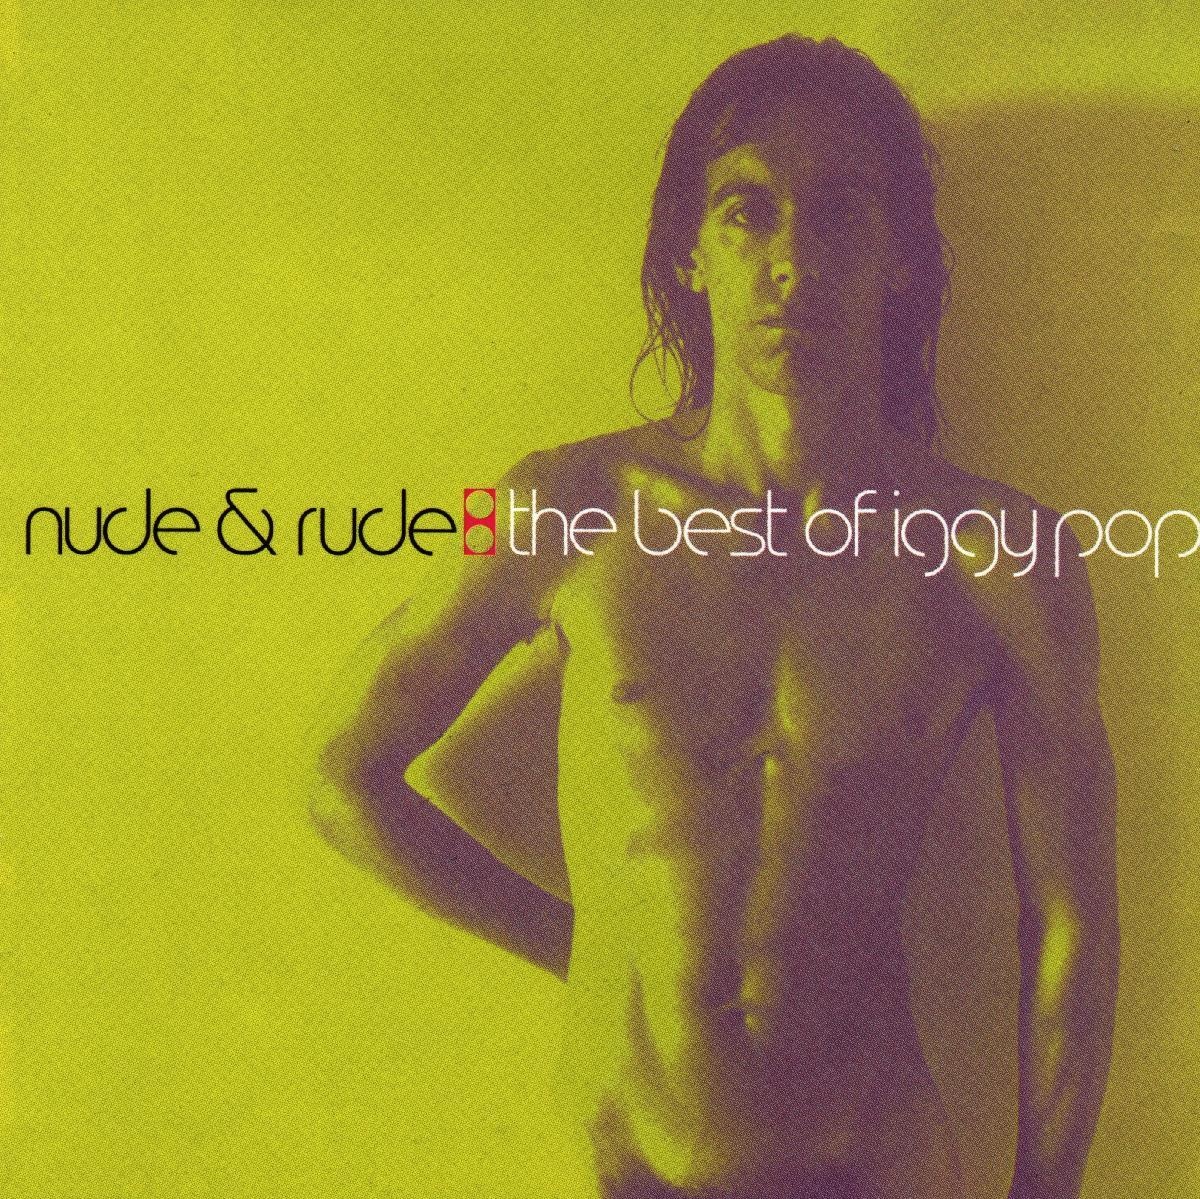 Nude & Rude:Best Of Iggy Pop - Iggy Pop. (CD)